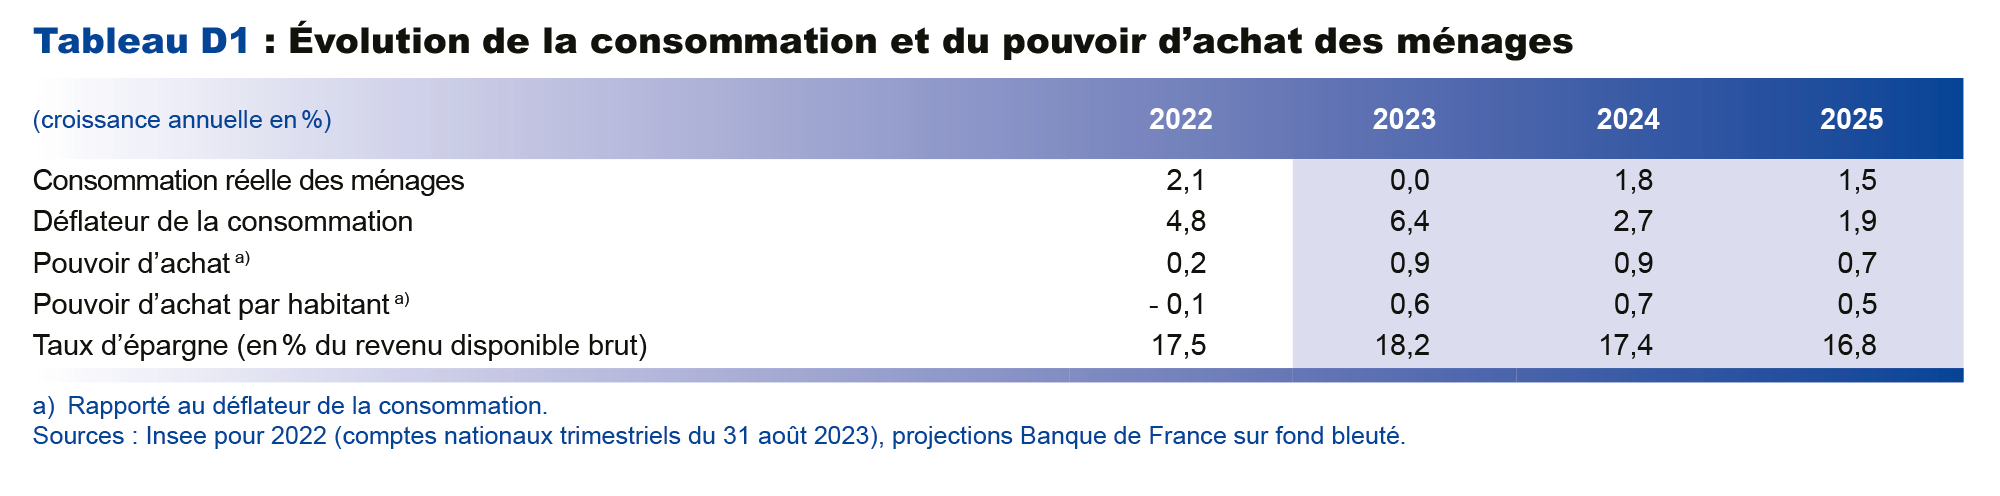  Projections macroéconomiques septembre 2023 - Evolution de la consommation et du pouvoir d'achat des ménages